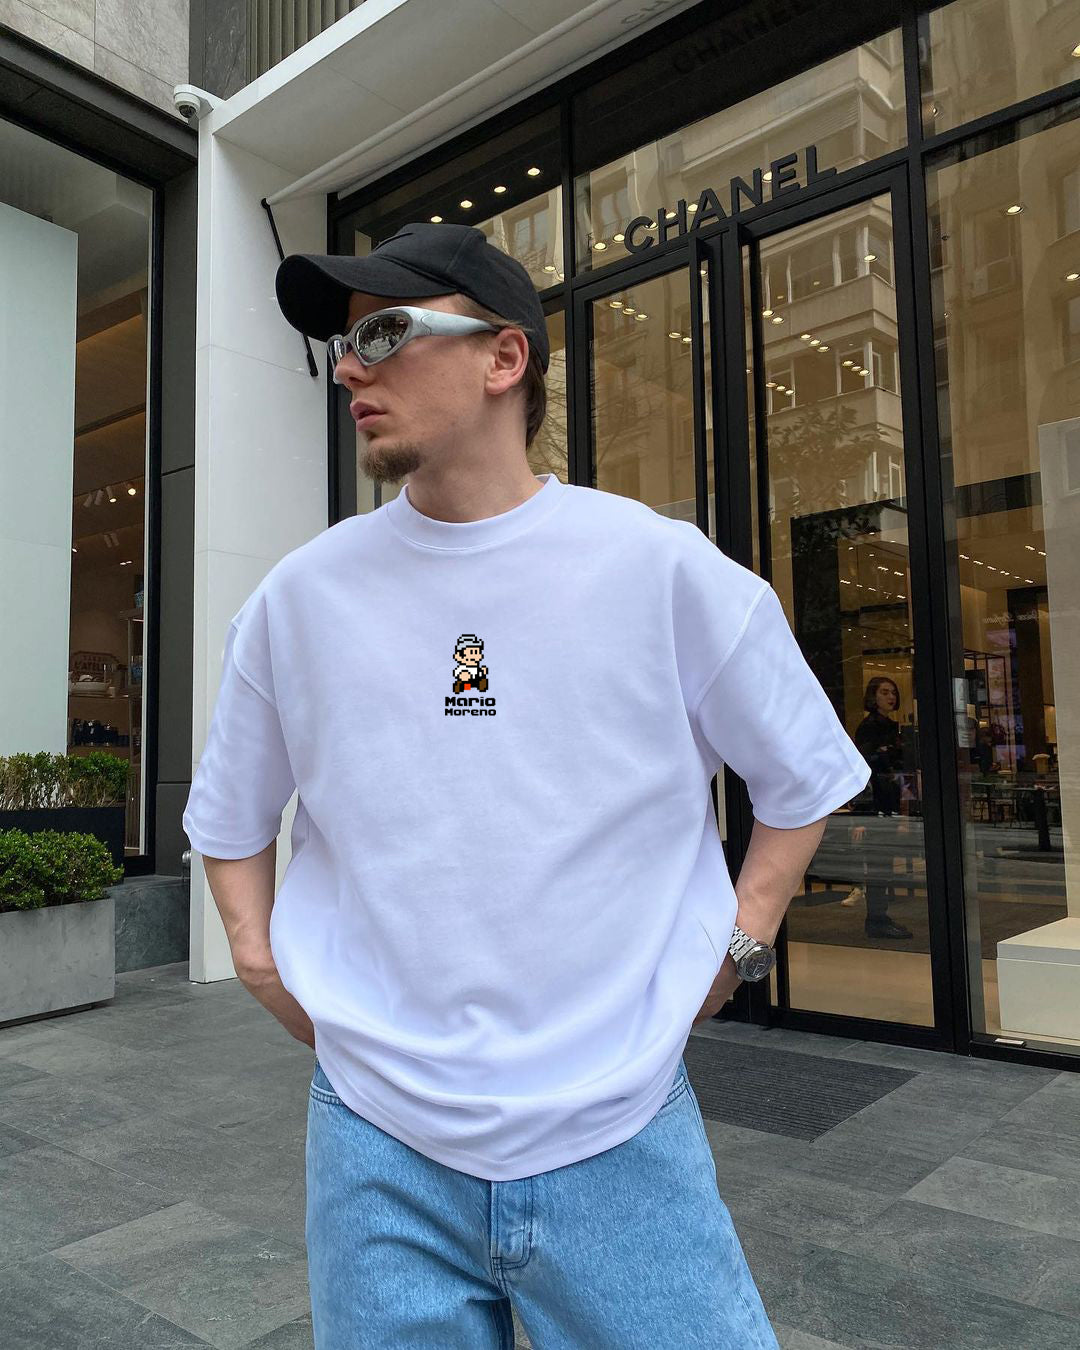 White "’Mario" Printed Oversize T-Shirt